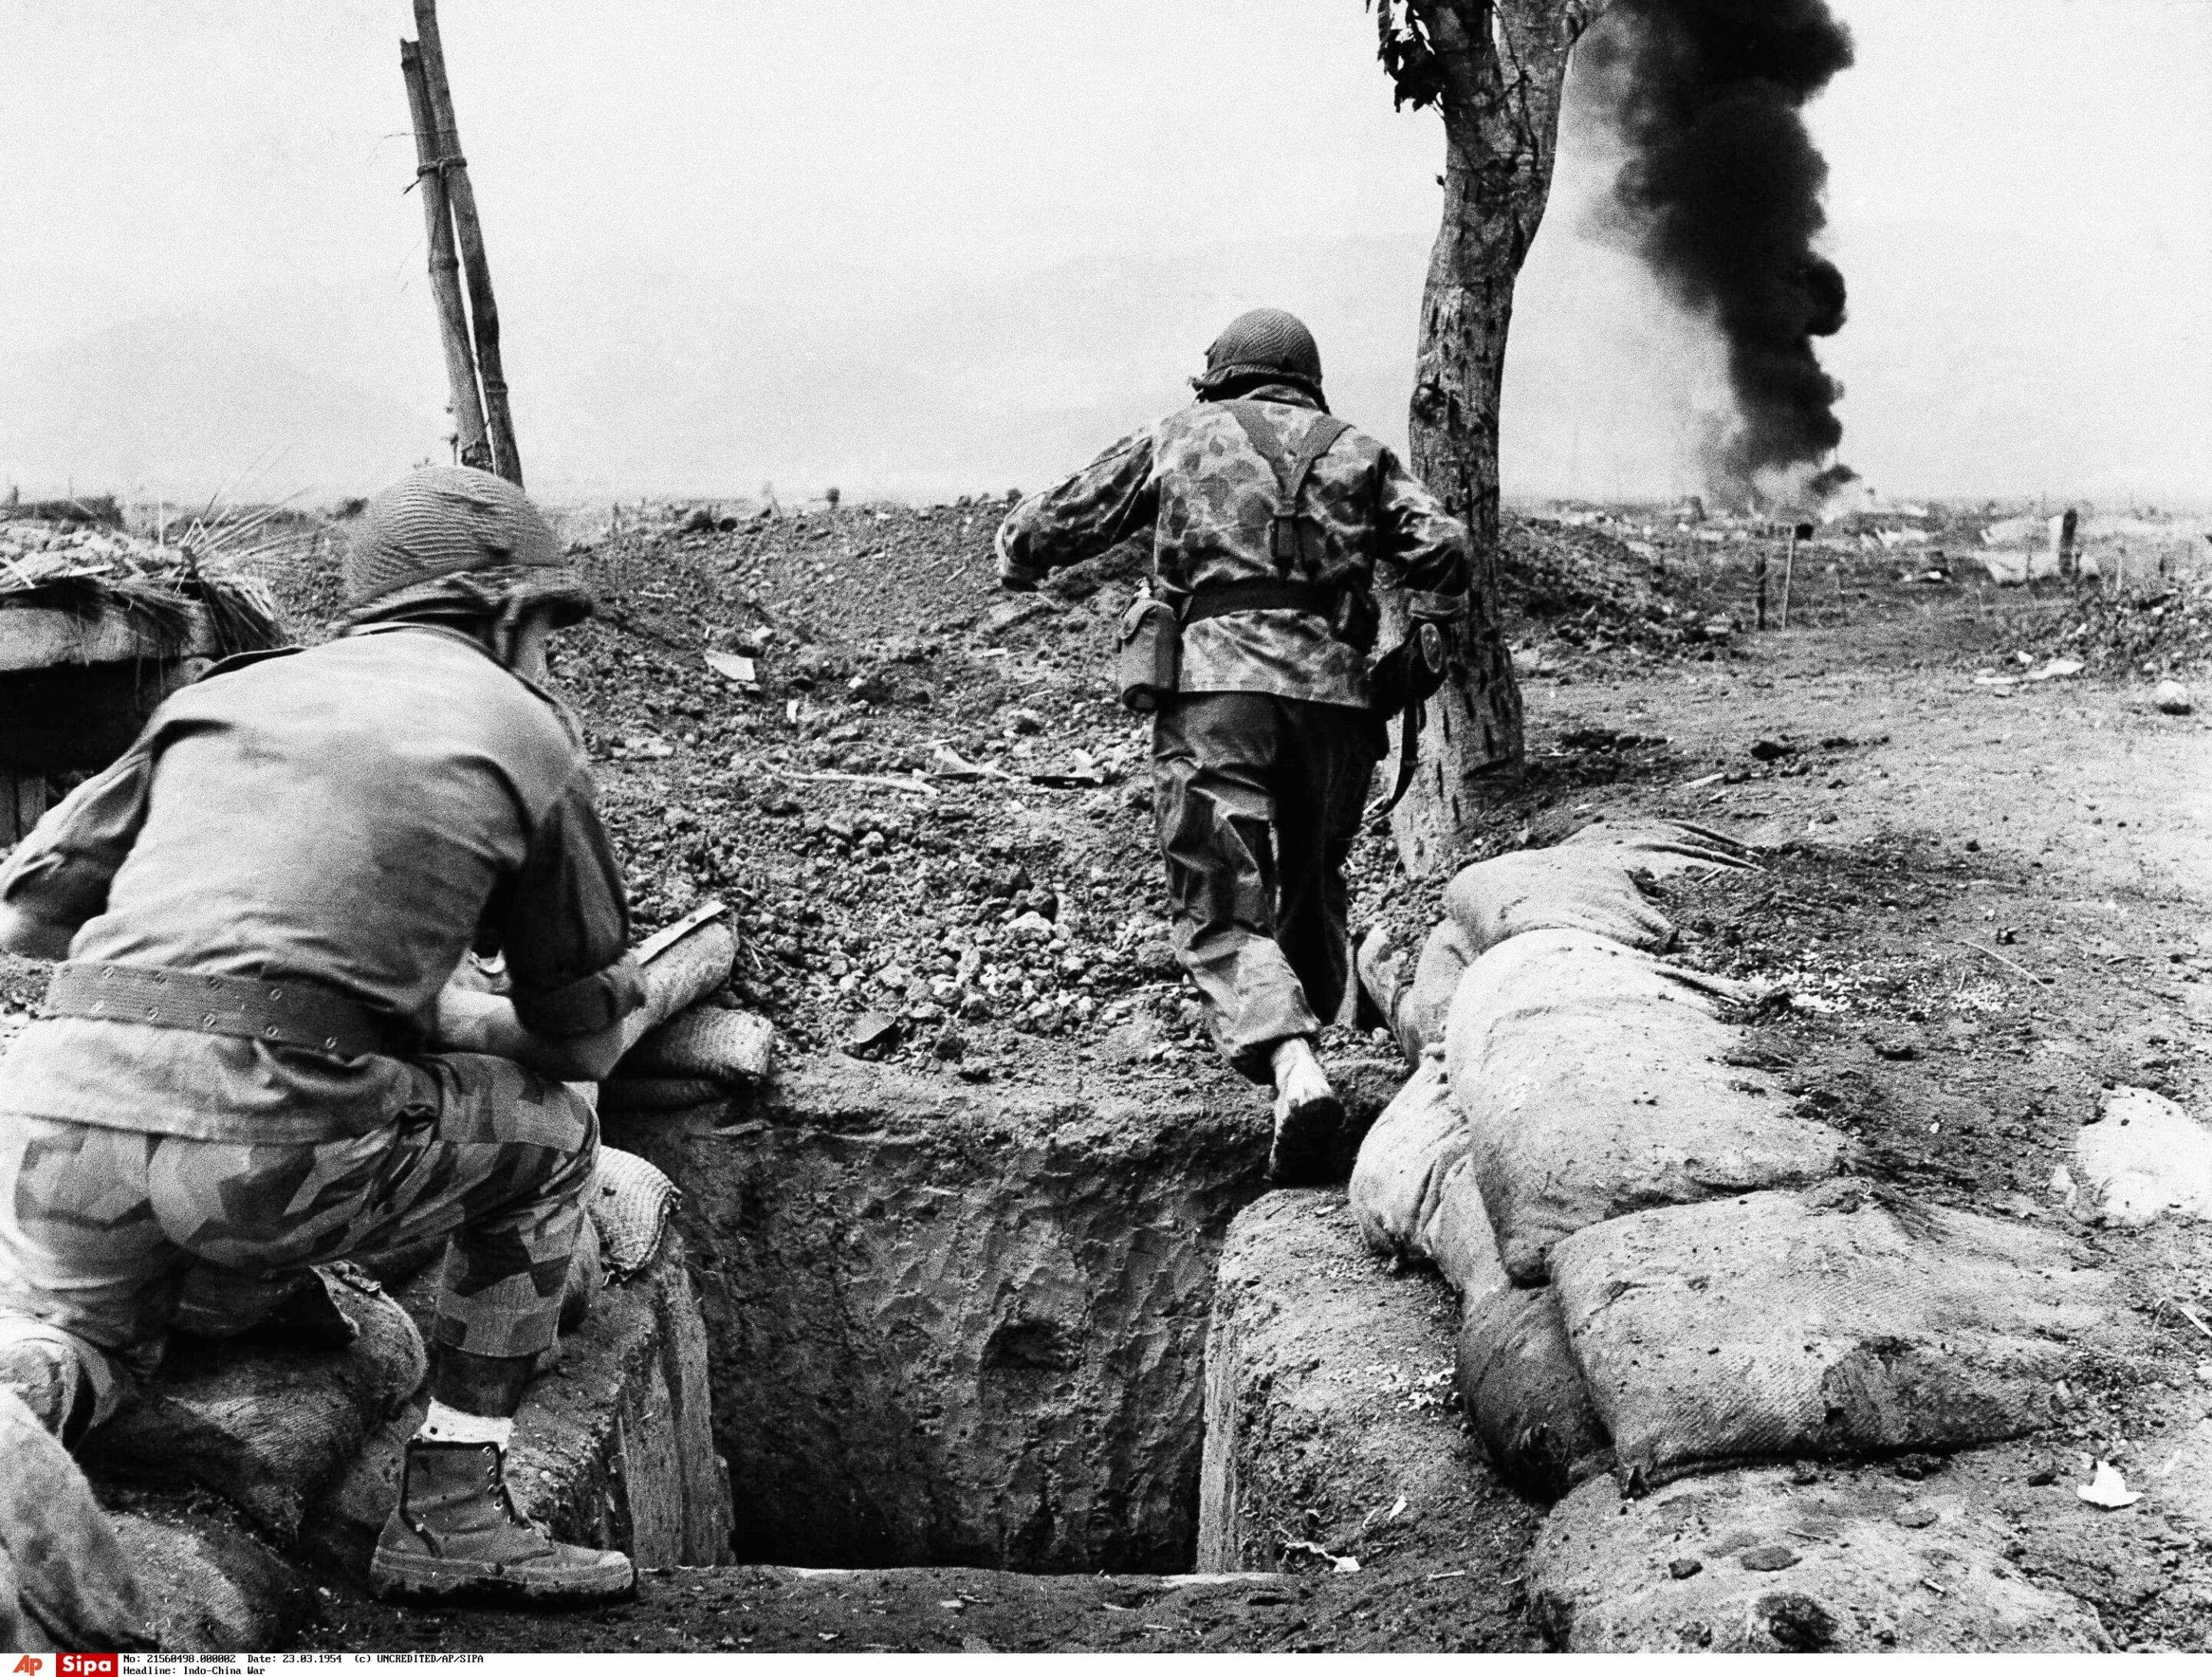 De violents combats ont eu lieu dans la région de Dien Bien Phu en Indochine lorsque la Légion française du Vietnam et l'artillerie ont tenu la ville contre des assauts répétés, le 14 mars 1954. Crédits: AP Photo